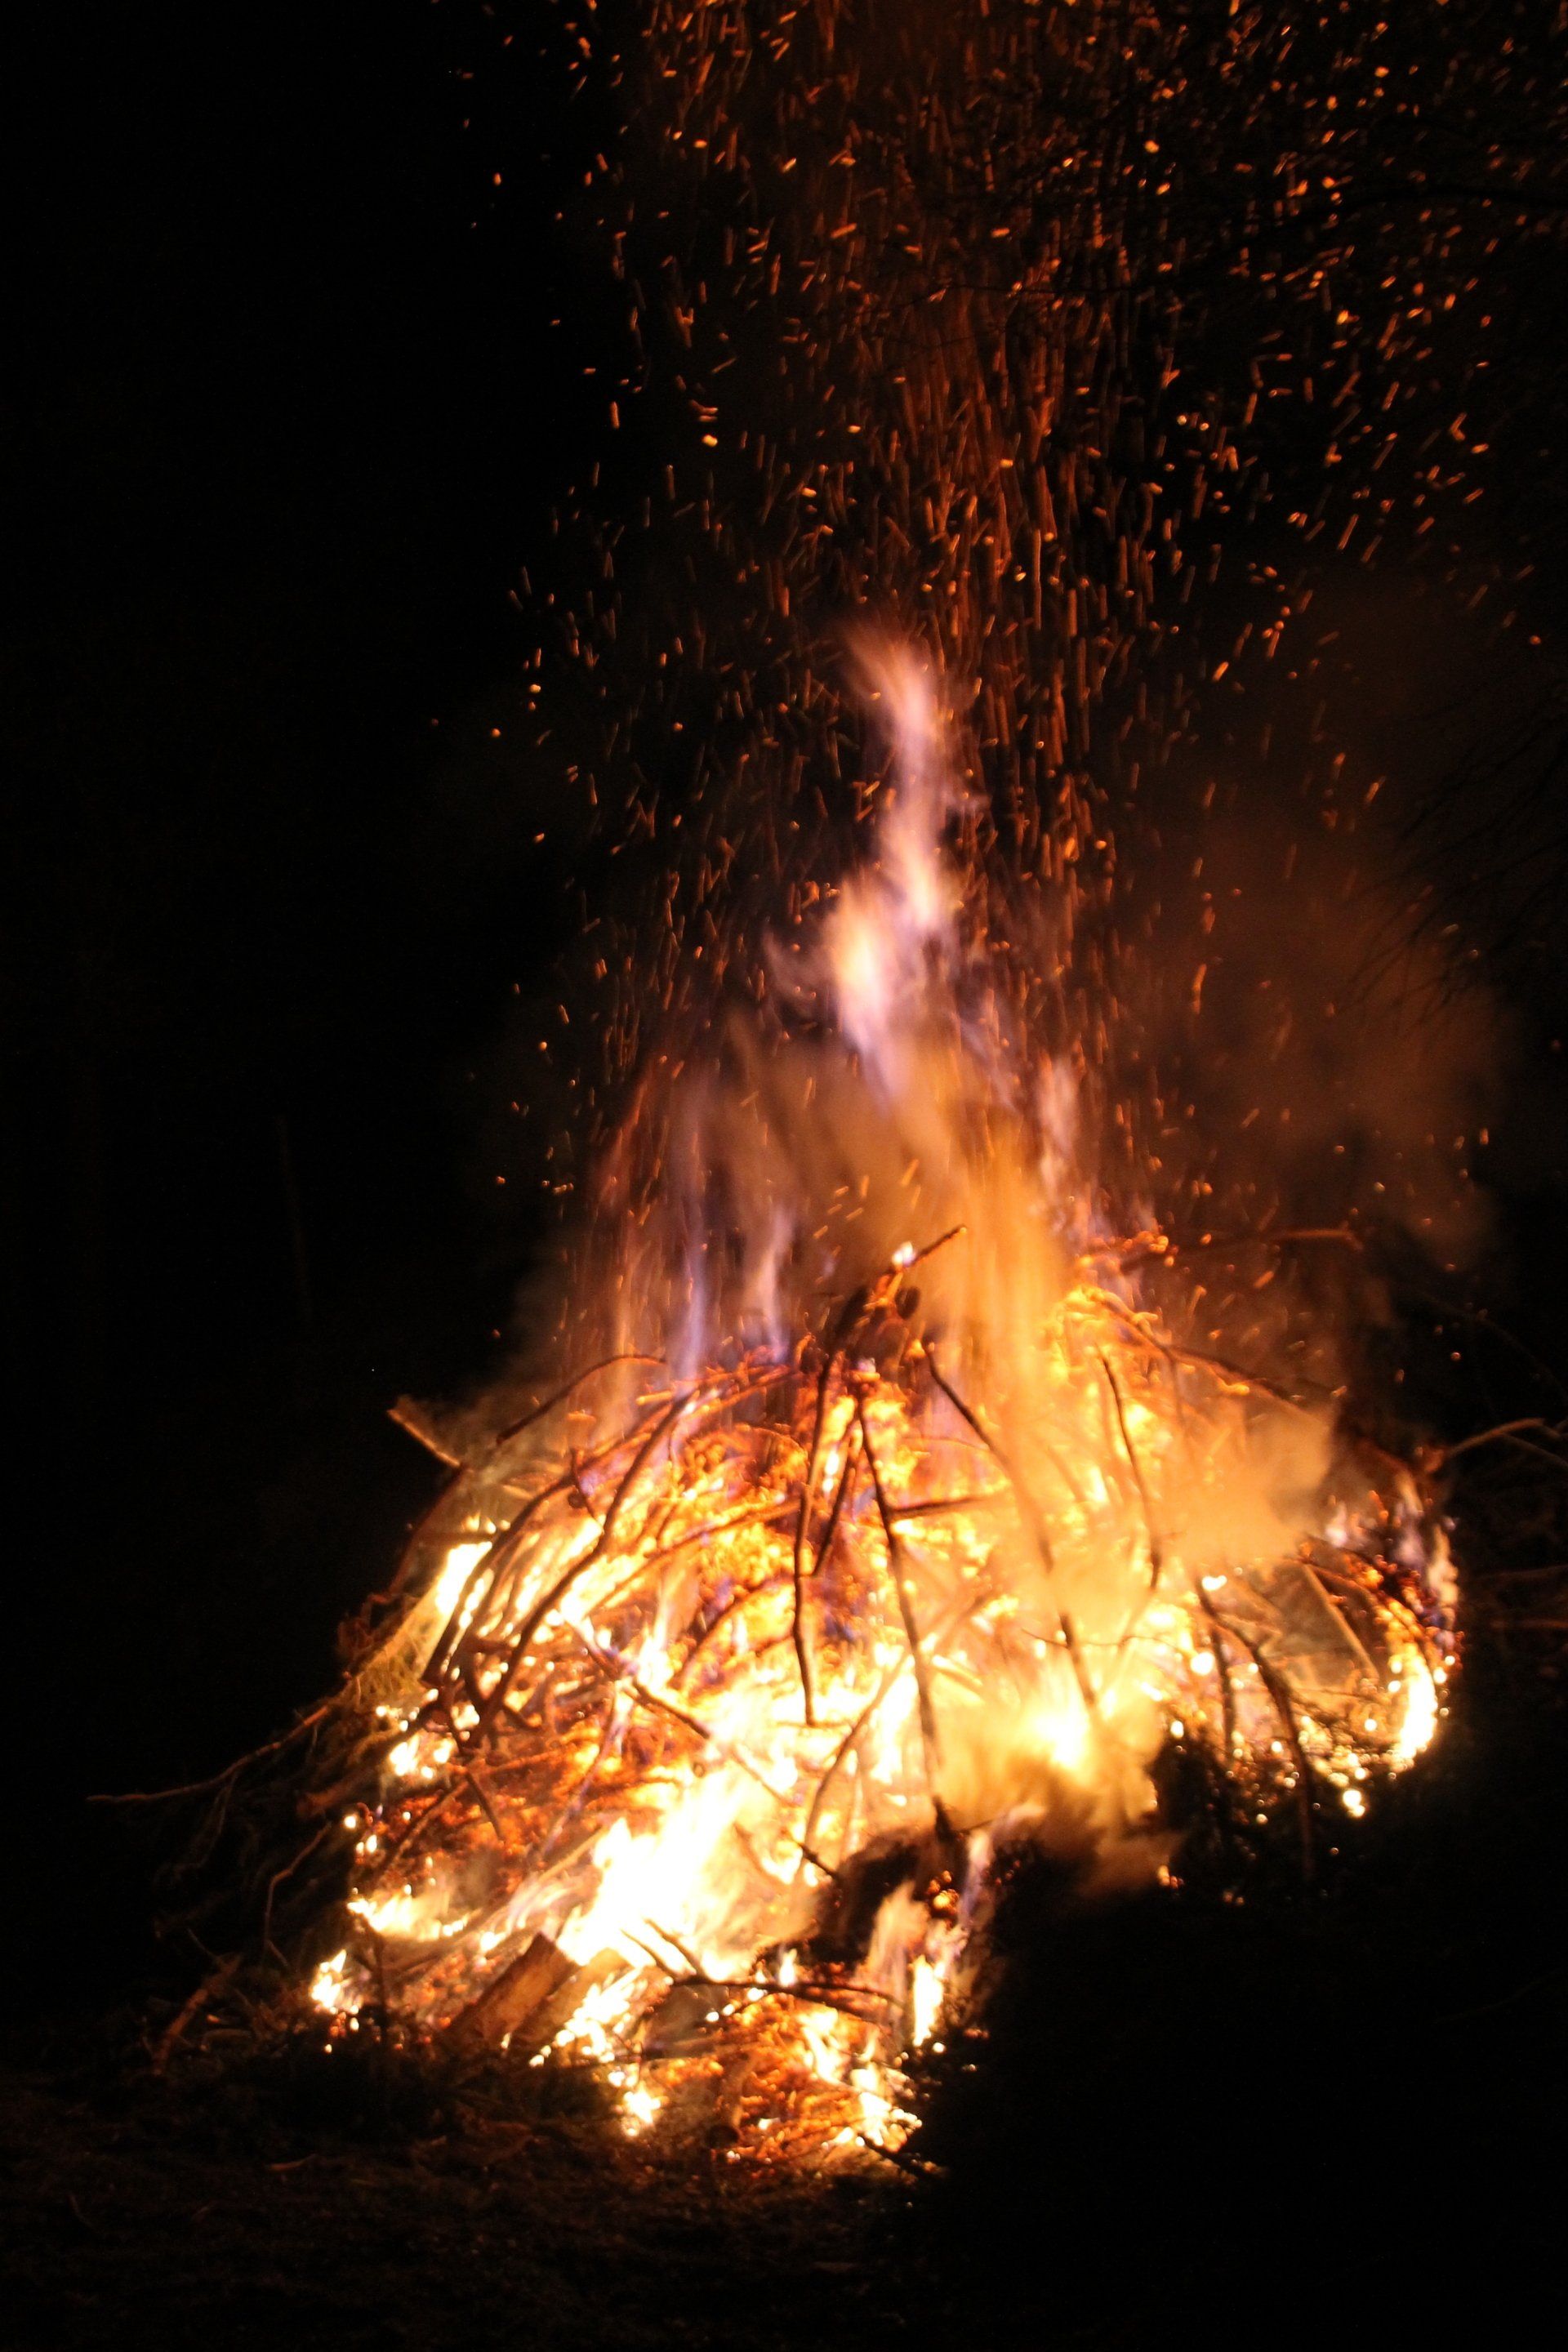 barbecue evening & bonfire